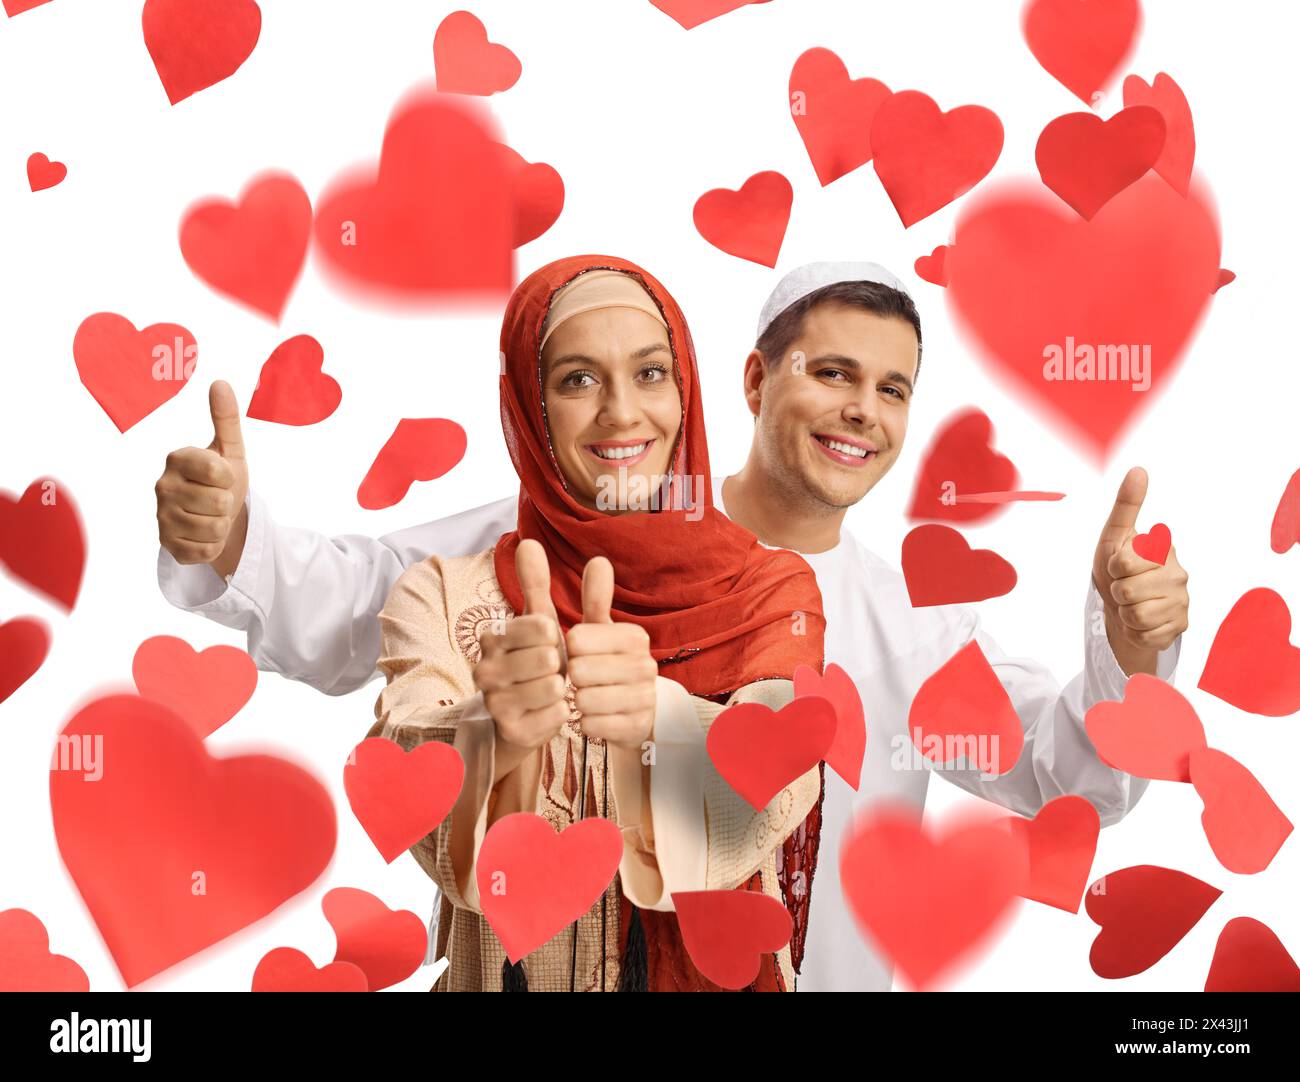 Giovane uomo e donna in abiti etnici che mostrano i pollici sotto i cuori rossi isolati su sfondo bianco Foto Stock